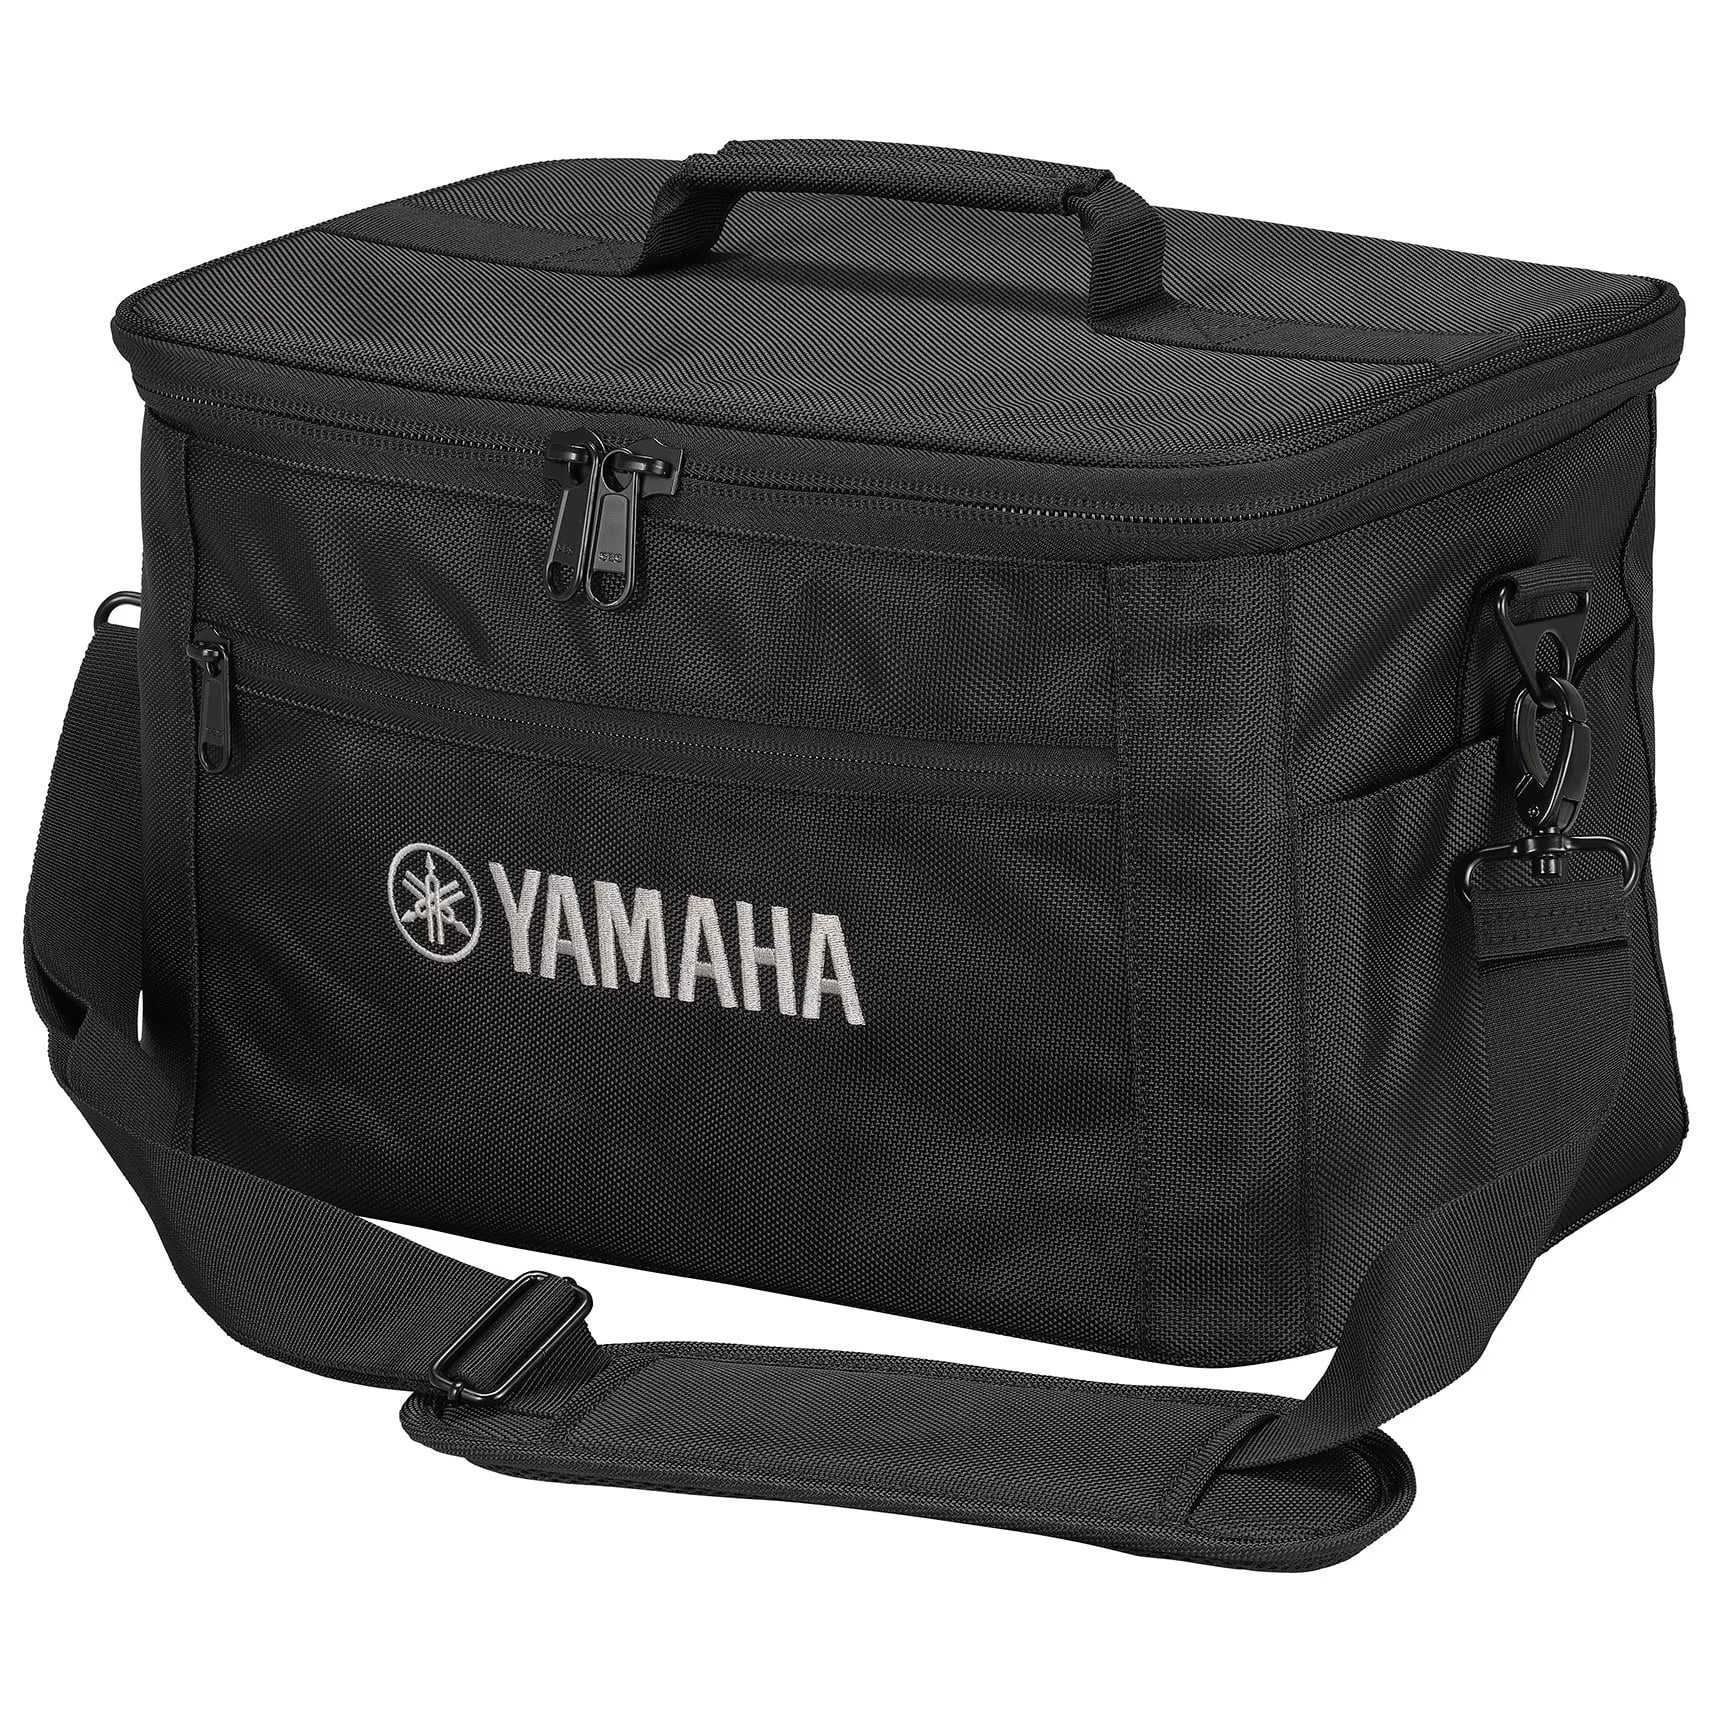 Yamaha STAGEPAS 100 BAG